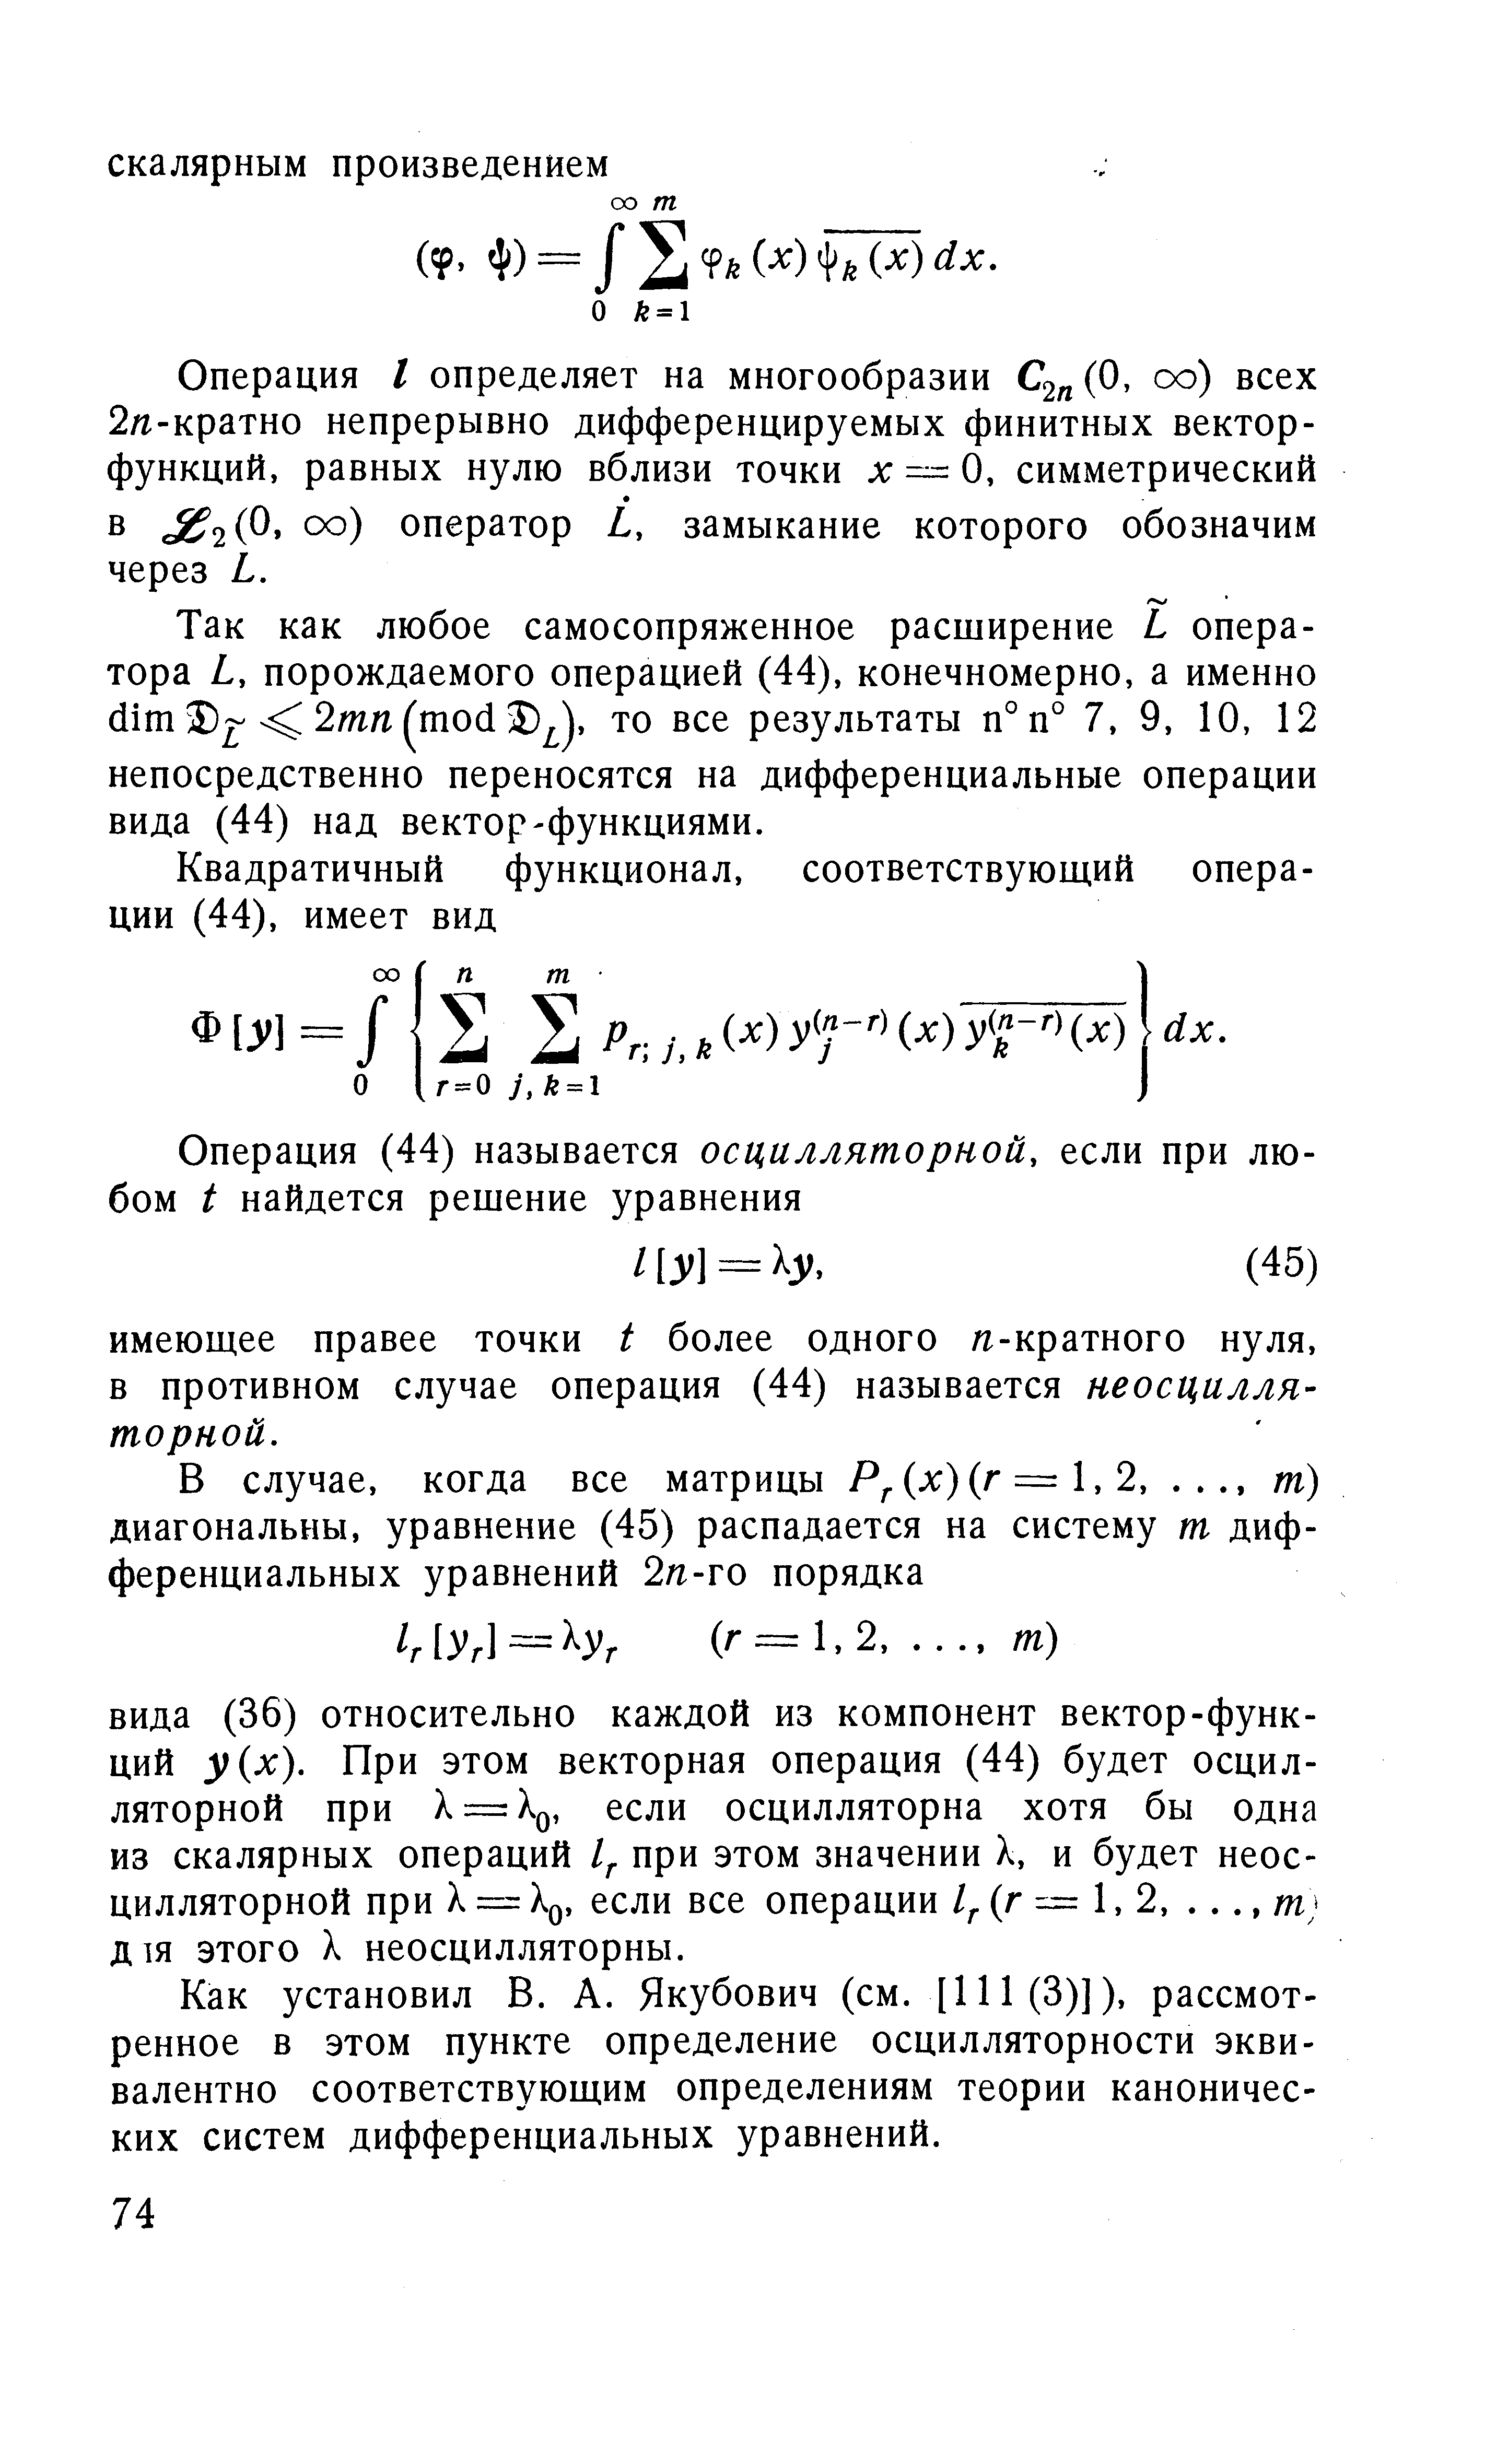 Как установил В. А. Якубович (см. [111 (3)]), рассмотренное в этом пункте определение осцилляторности эквивалентно соответствующим определениям теории канонических систем дифференциальных уравнений.